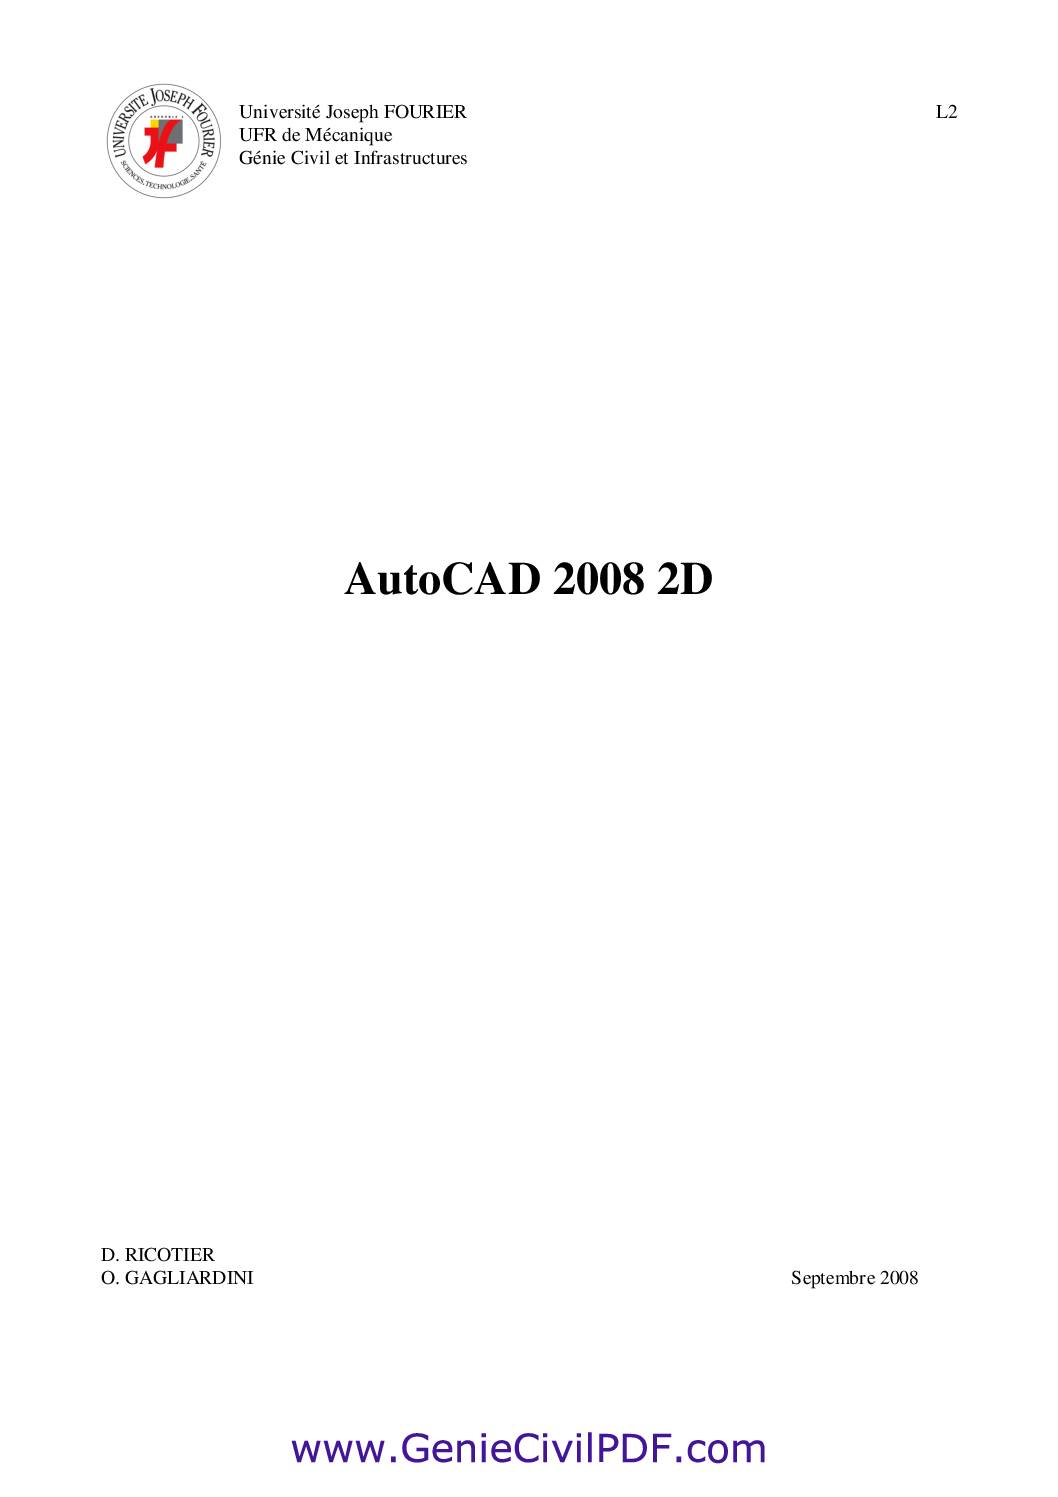 Polycopie AutoCAD 2D 2008